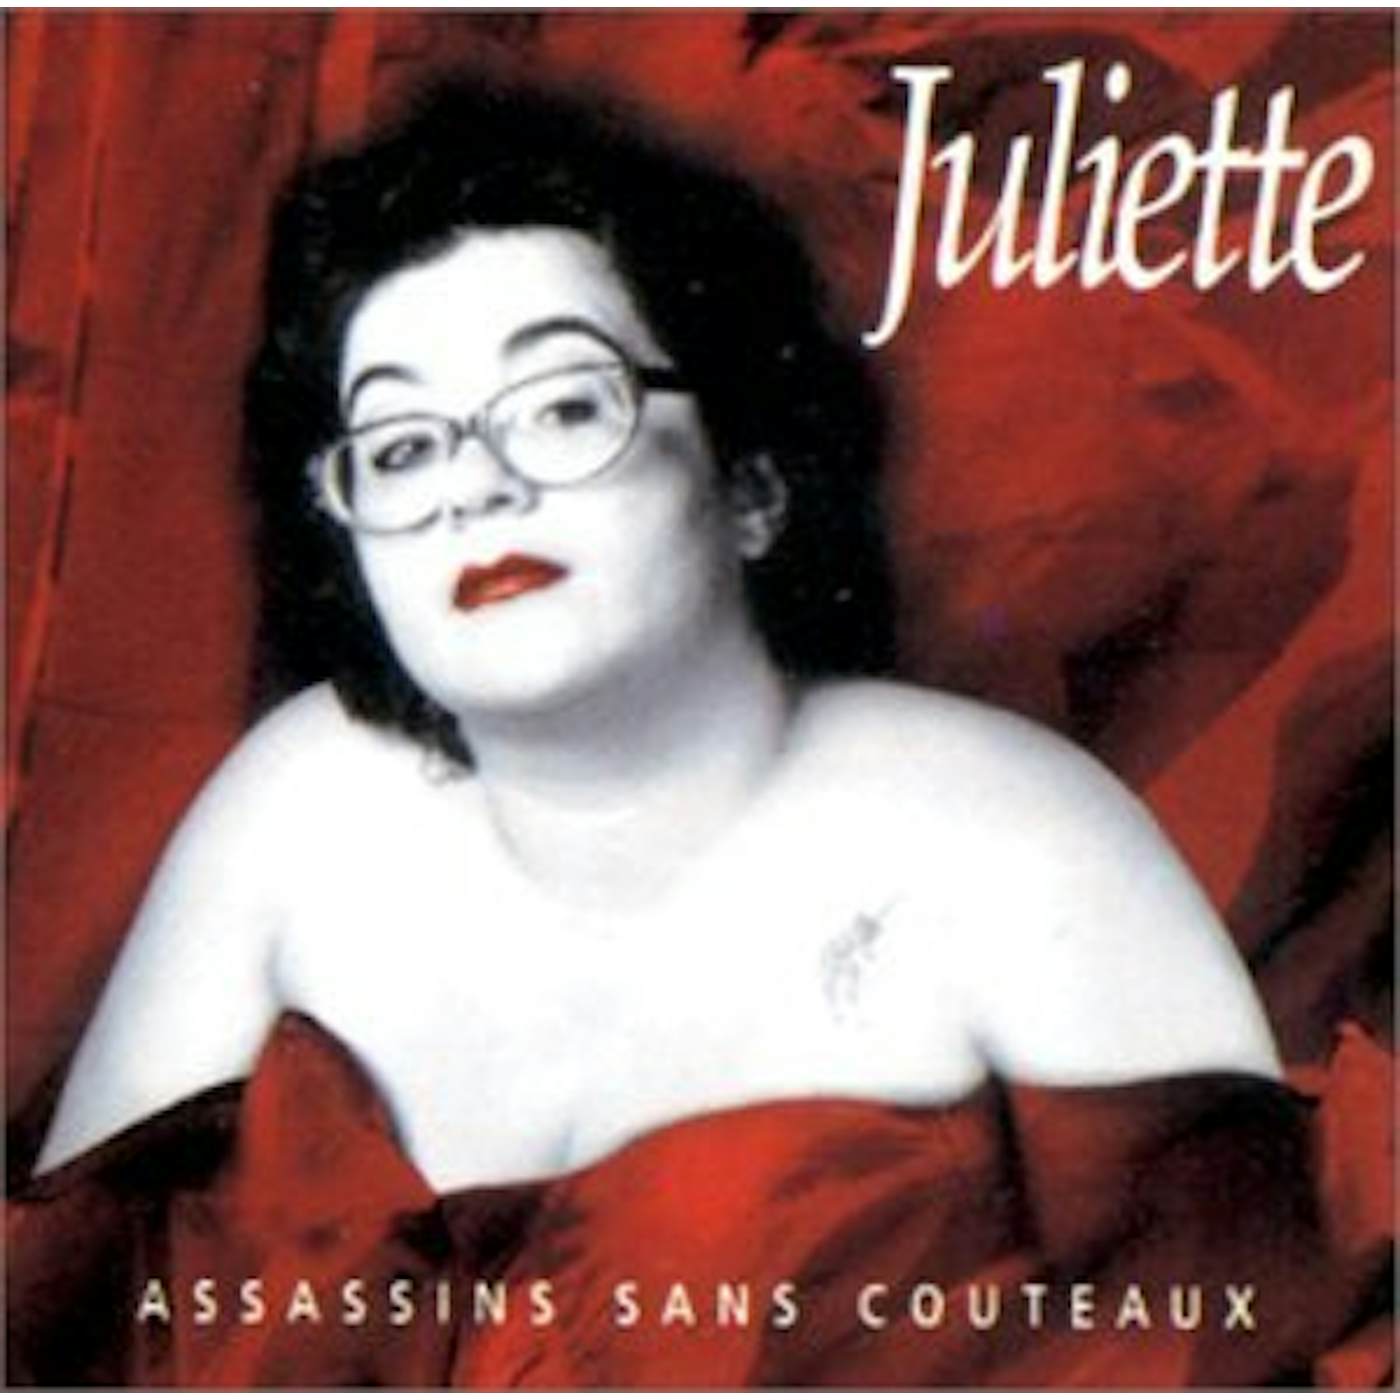 Juliette ASSASSINS SANS COUTEAUX CD